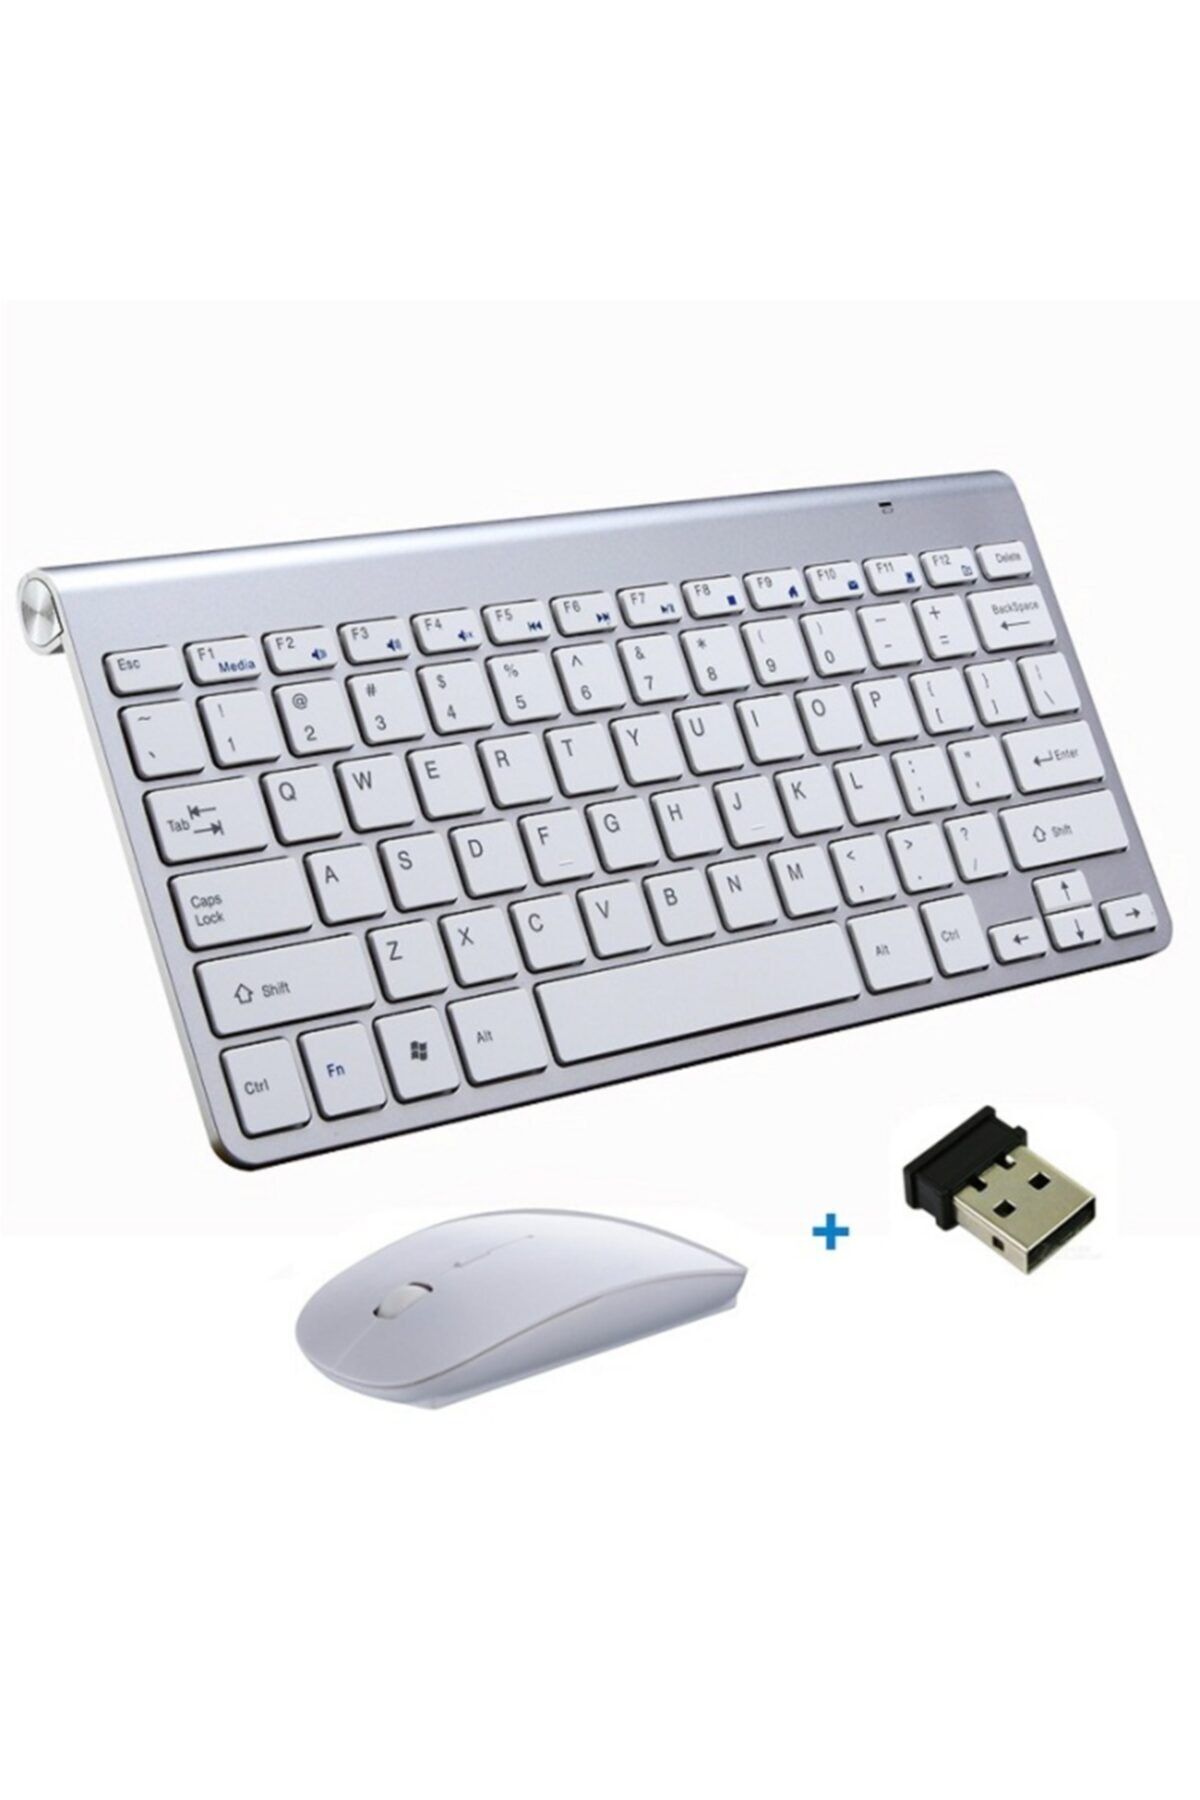 BK DESING Özel Şık Tasarım Mini Kablosuz 2.4g Klavye Ve Mause Taşınabilir Mini Harici Set (beyaz)